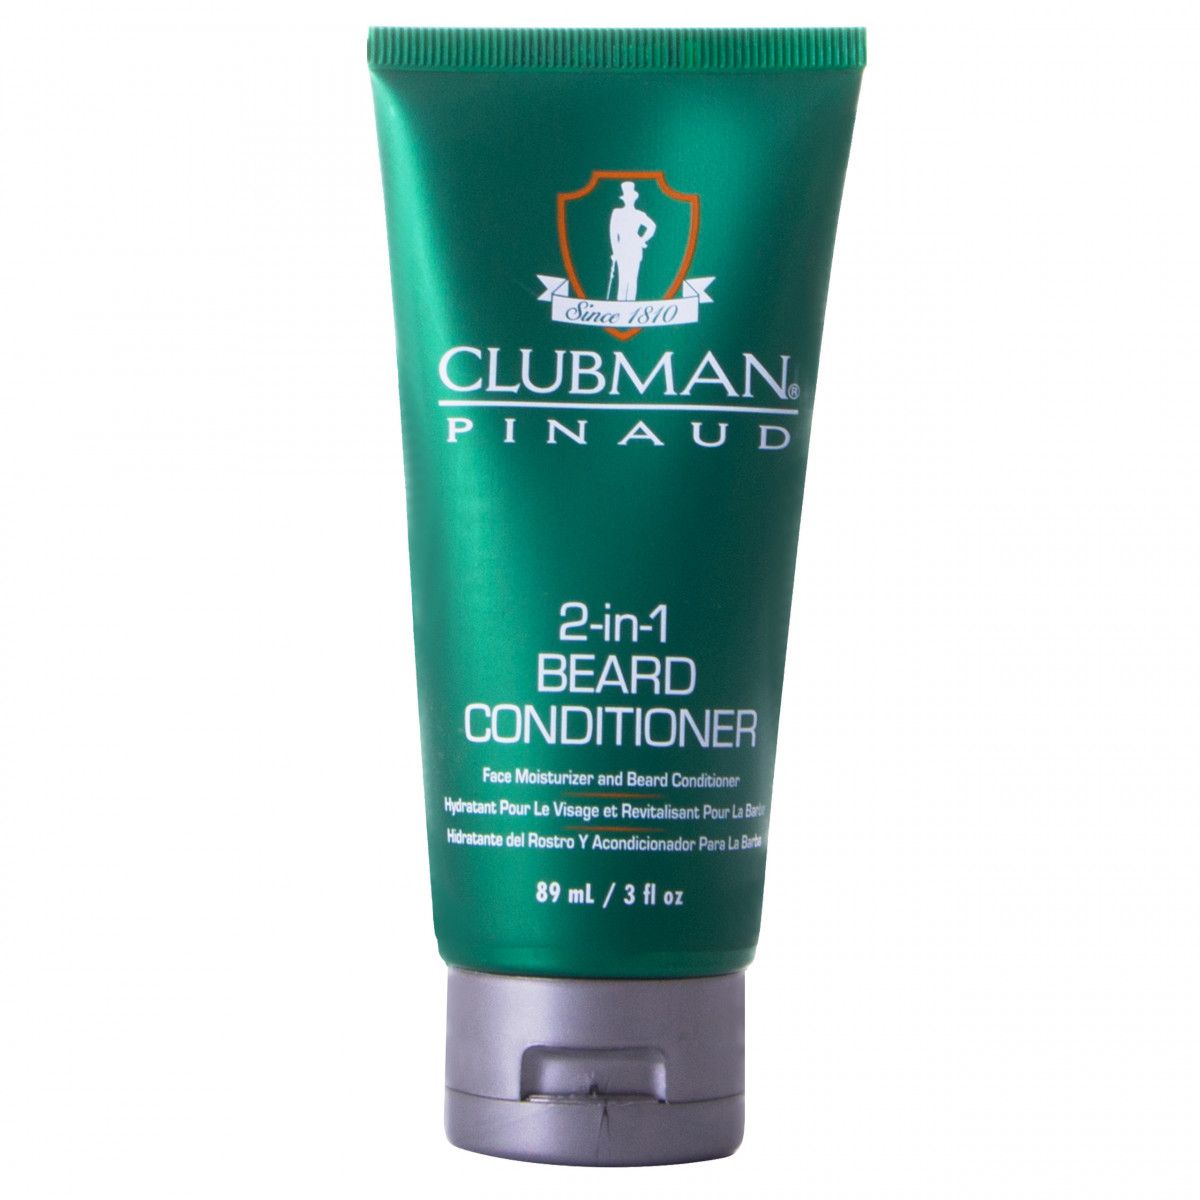 Clubman 2 in 1 Beard Conditioner nawilżająca odżywka do brody 89 ml